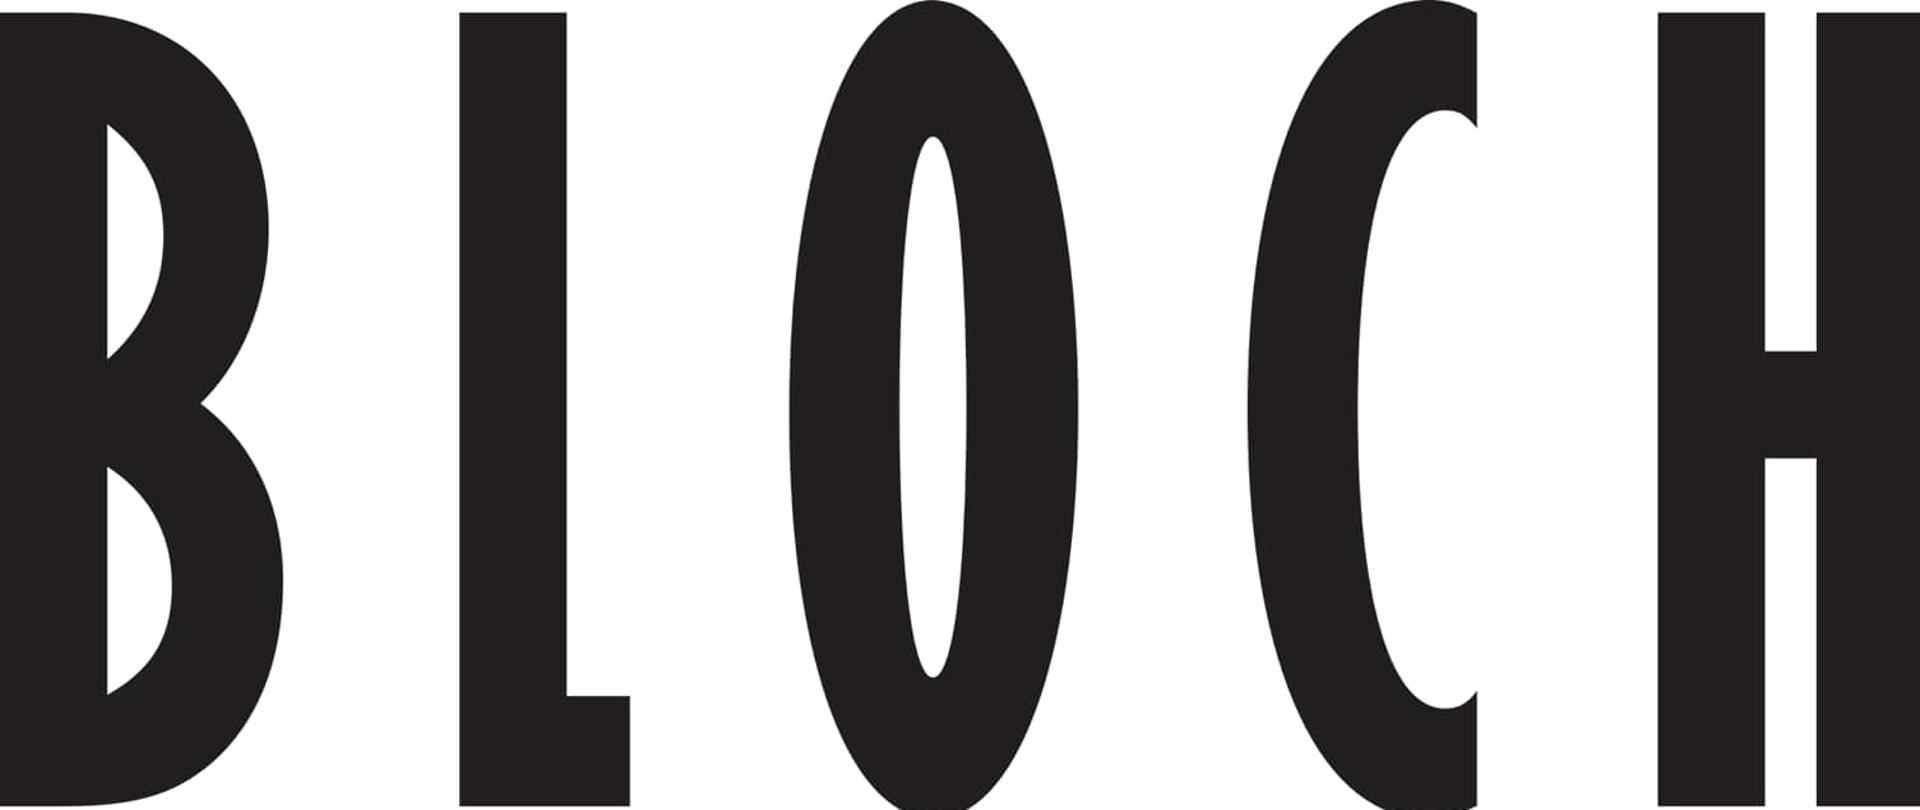 Logotyp BLOCH - napis BLOCH czarne litery na białym tle.